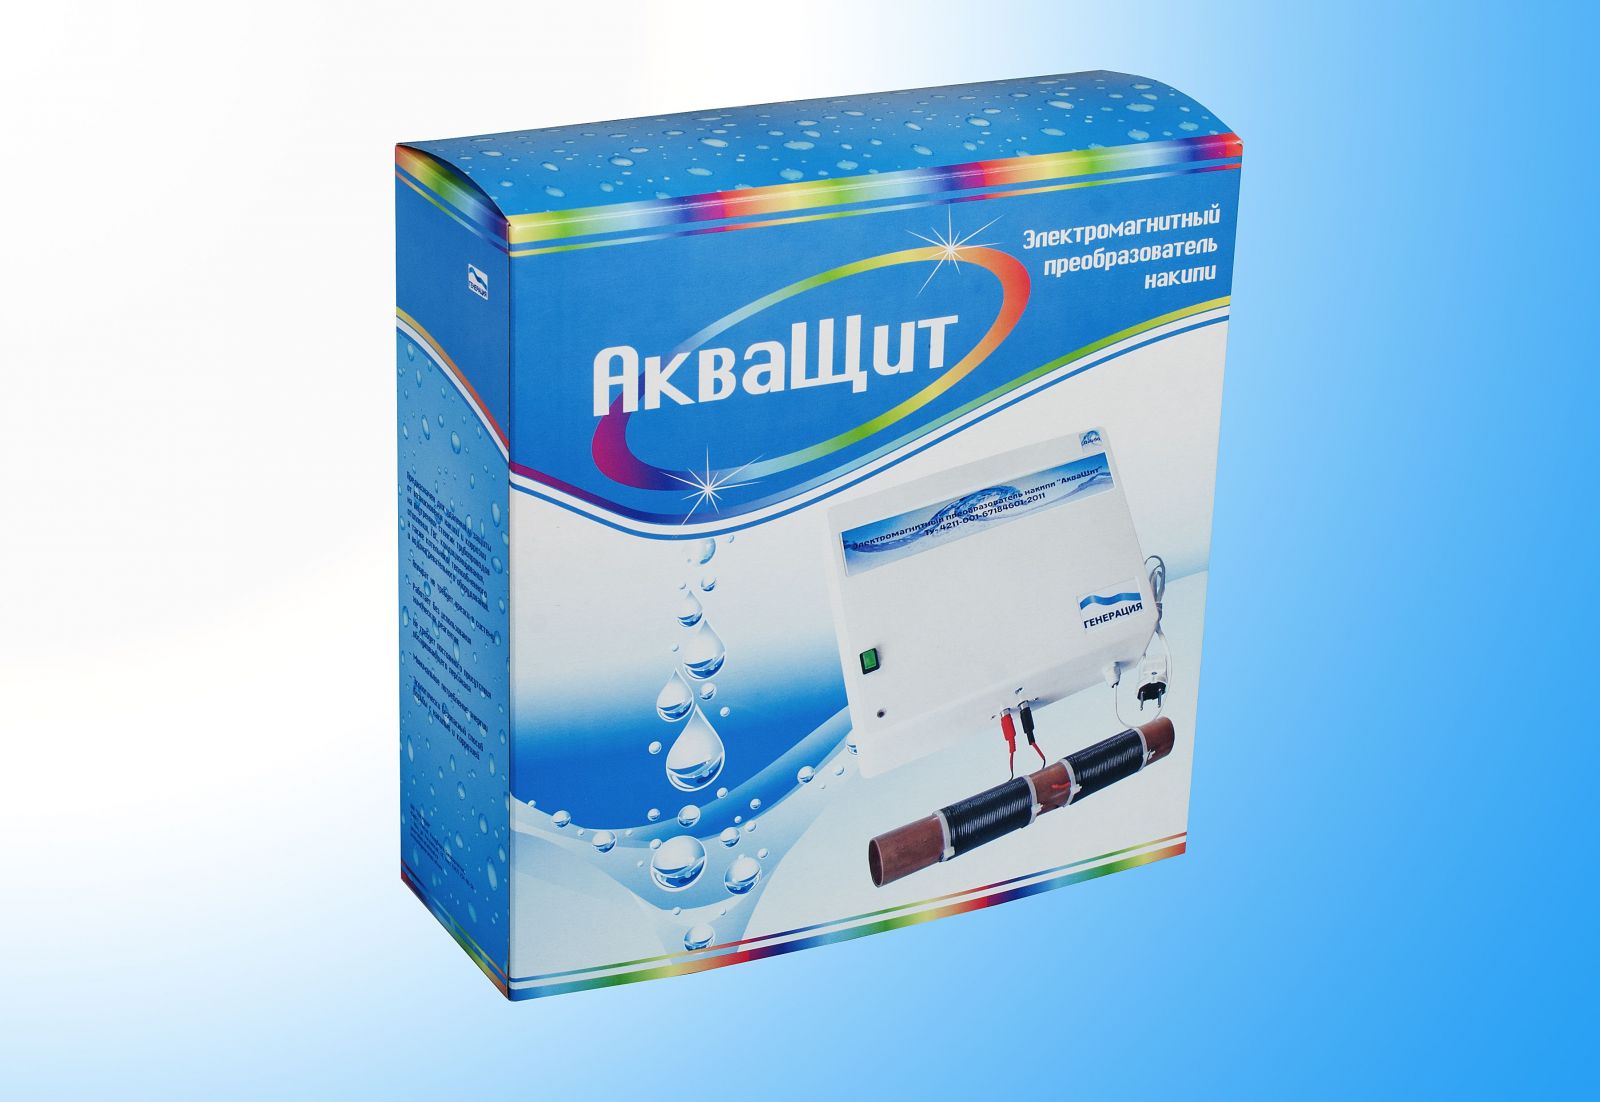 АкваЩит - инновационный метод умягчения и очистки воды